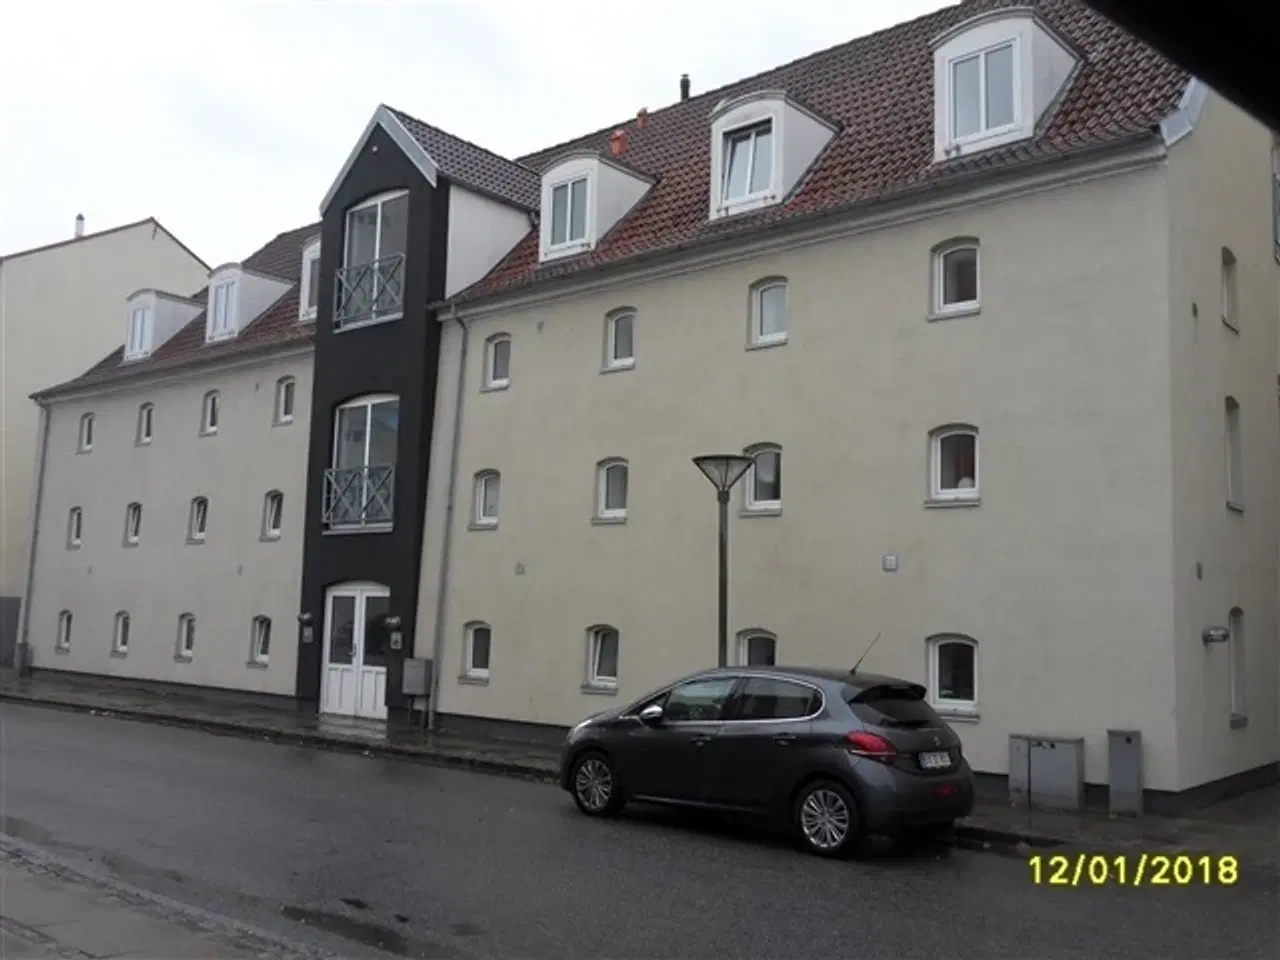 Billede 1 - 3 værelses lejlighed i Pakhuset på havnen i Hobro.